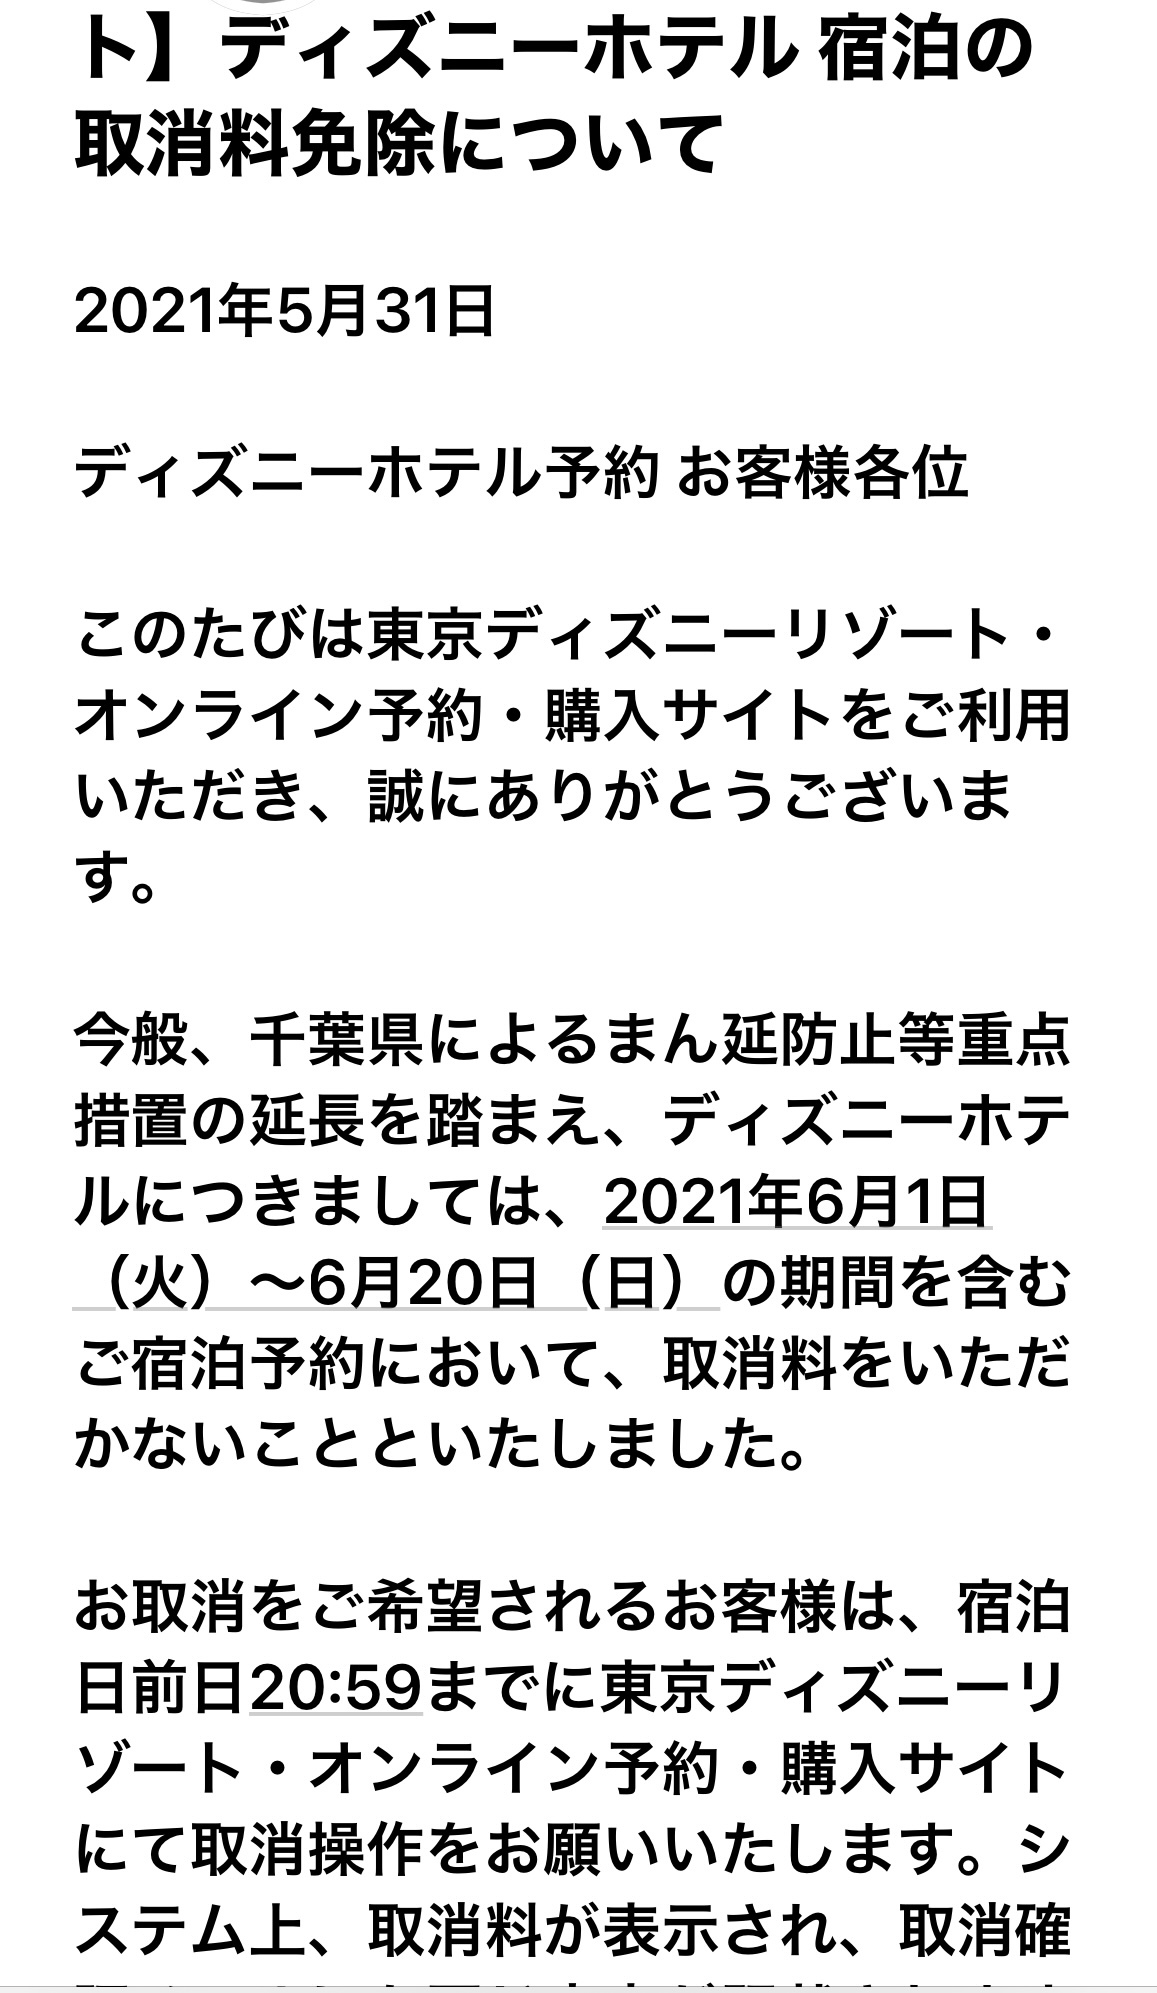 キャンセル 延長によるディズニーホテルの対応 東京ディズニーリポート